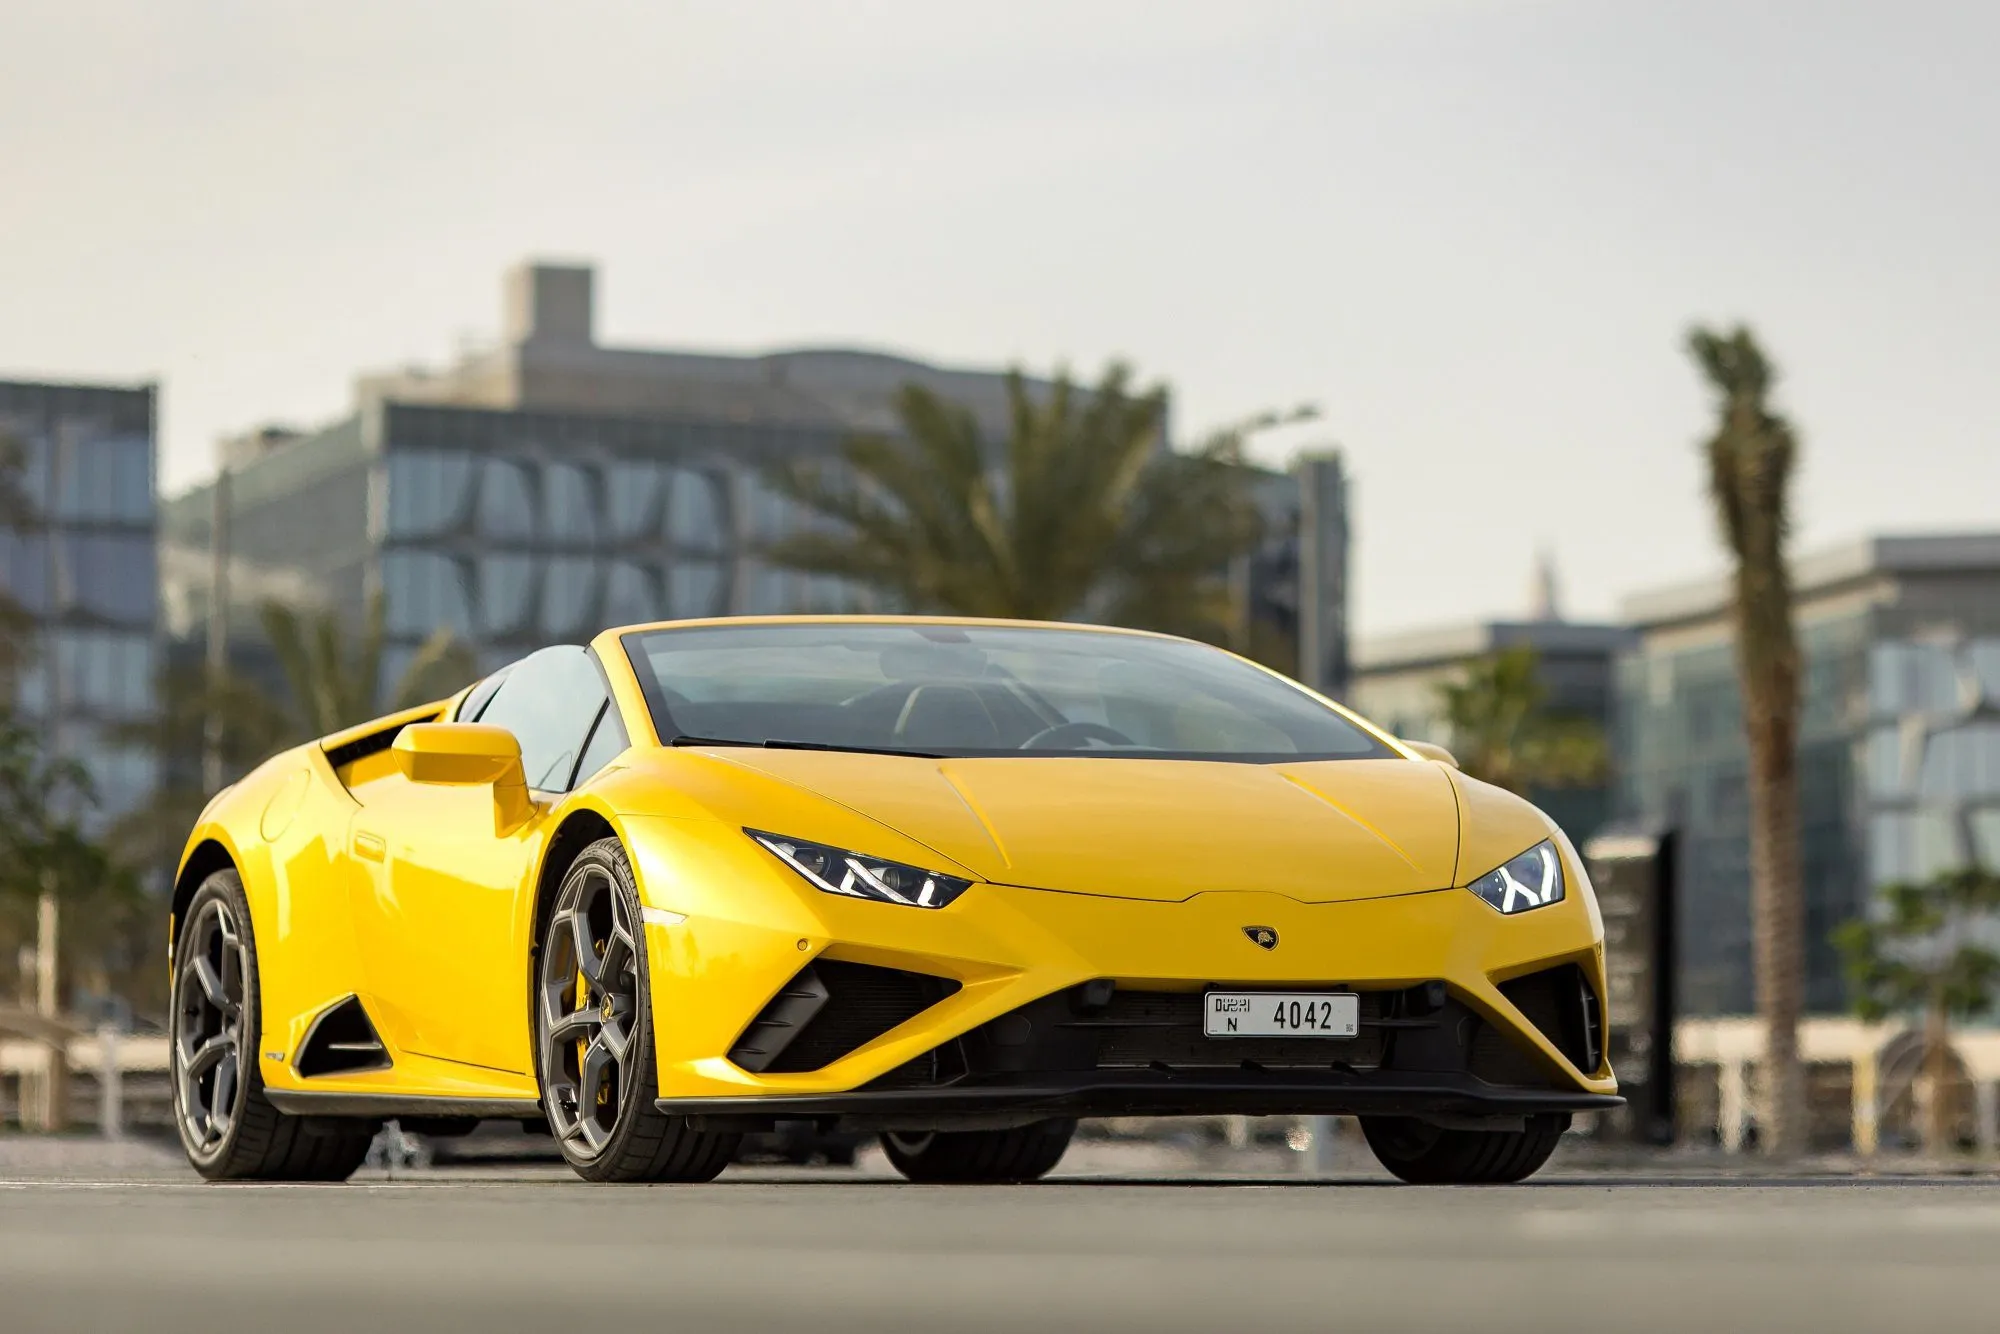 Rent Lamborghini in Dubai May 30% Off - Lambo Rental Dubai